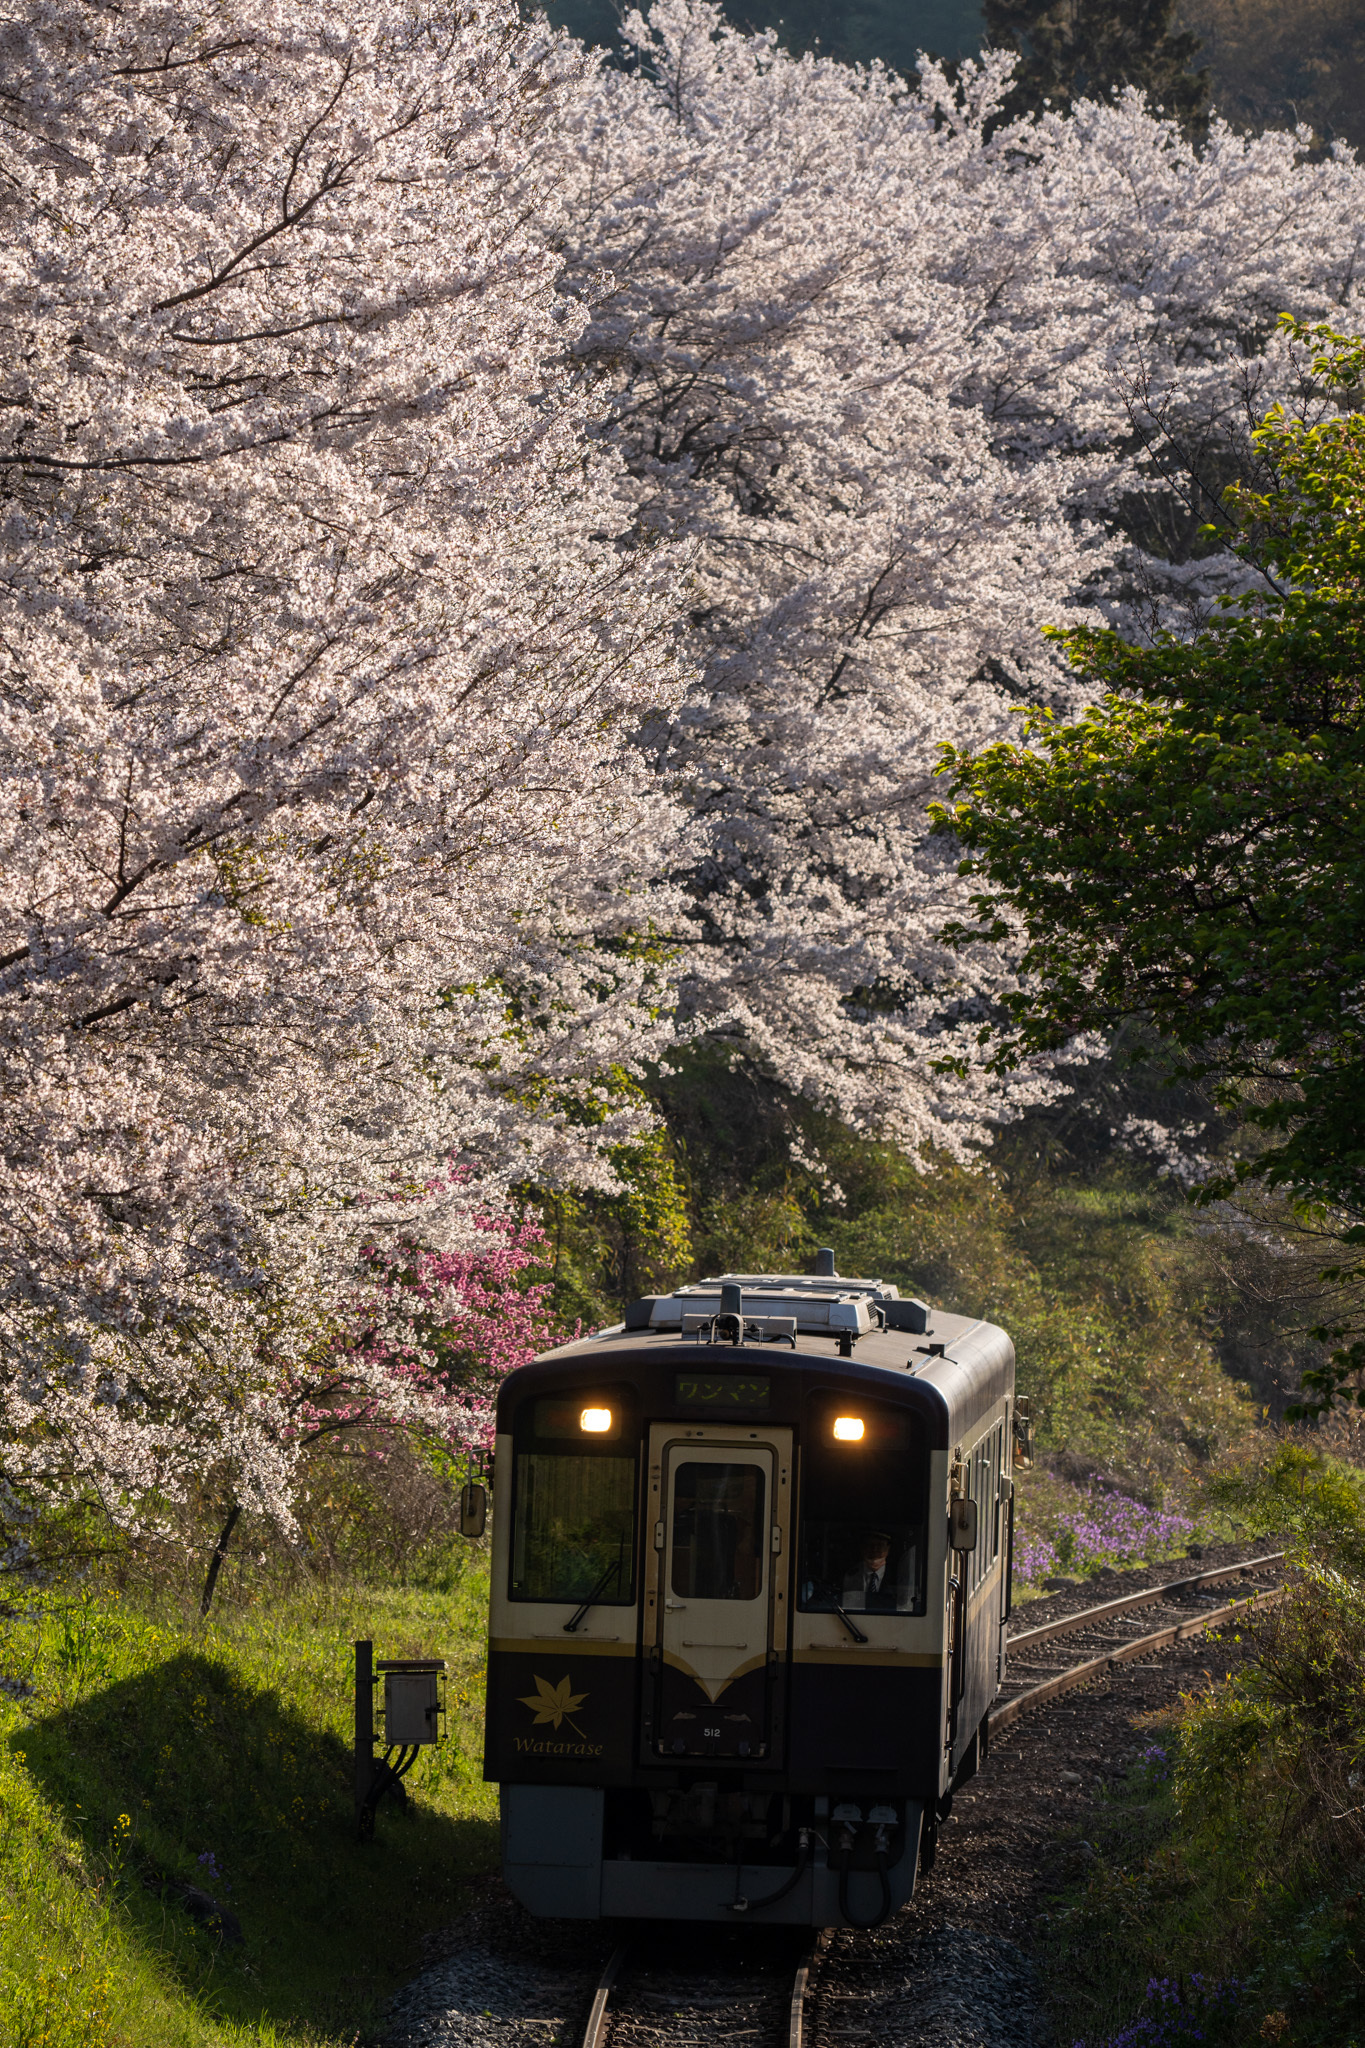 20230401_支所前の桜を構図に入れて桐生行き712Dを撮る